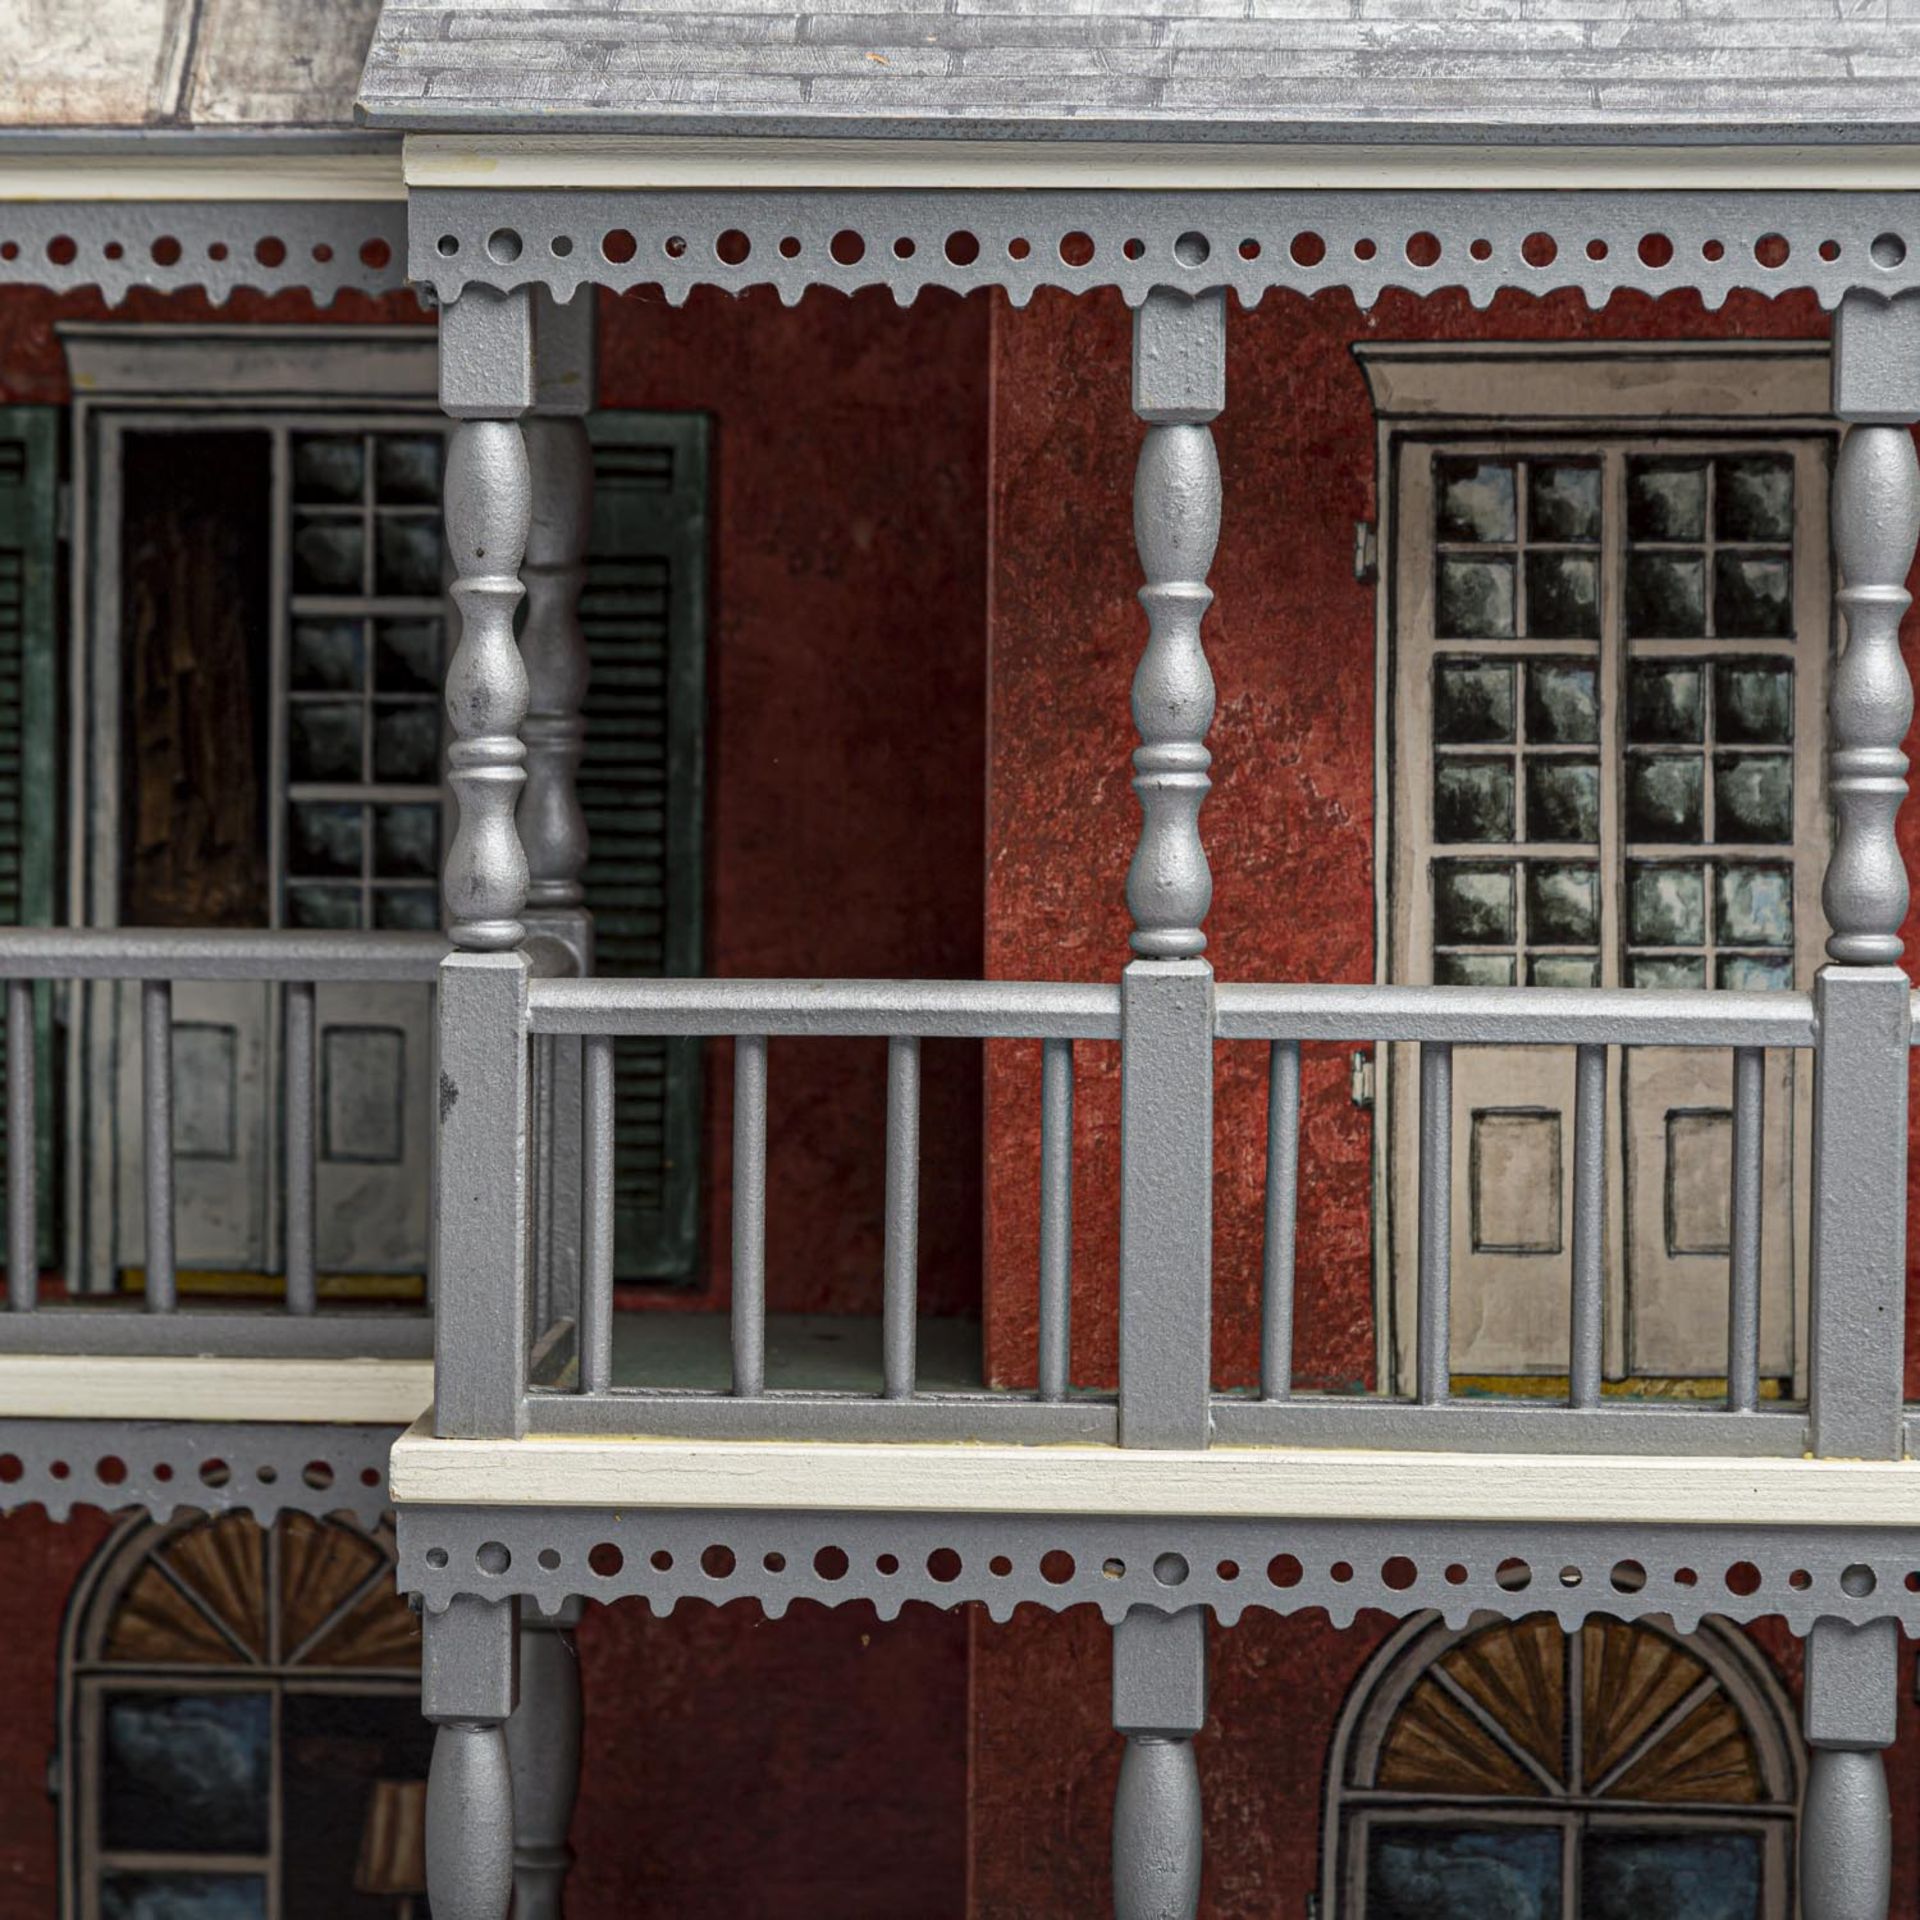 STEIFF Haus mit Spieluhr "New Orleans",plastisch ausgearbeitete Häuserfront mit Balkonen und Dächern - Bild 5 aus 7